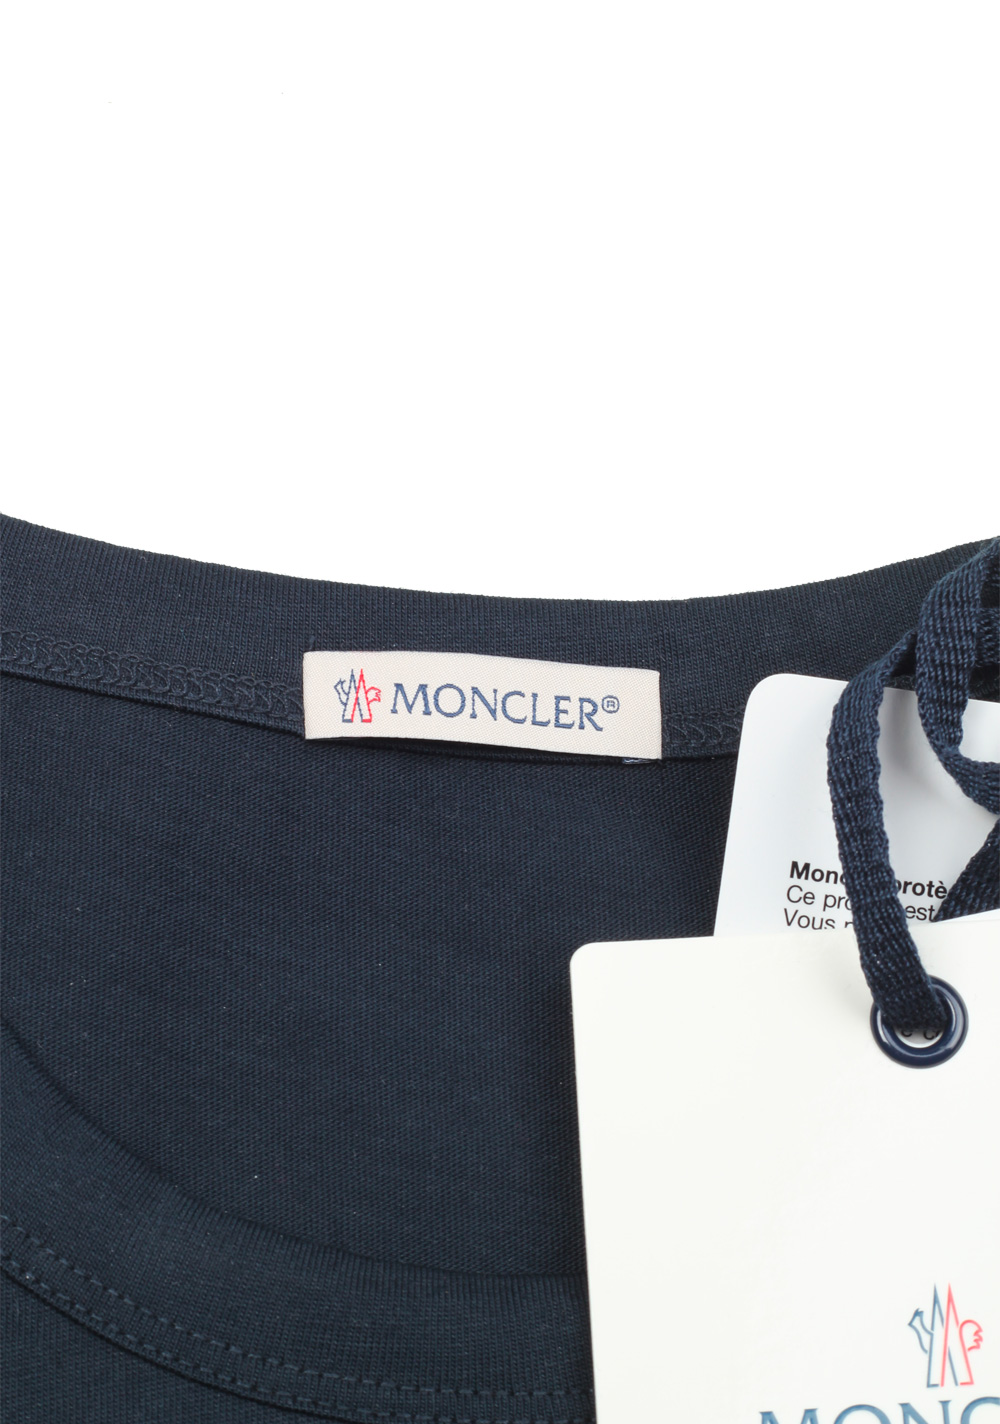 Moncler Blue Brand Patch Crew Neck Tee Shirt Size XXL / 44R U.S. | Costume Limité